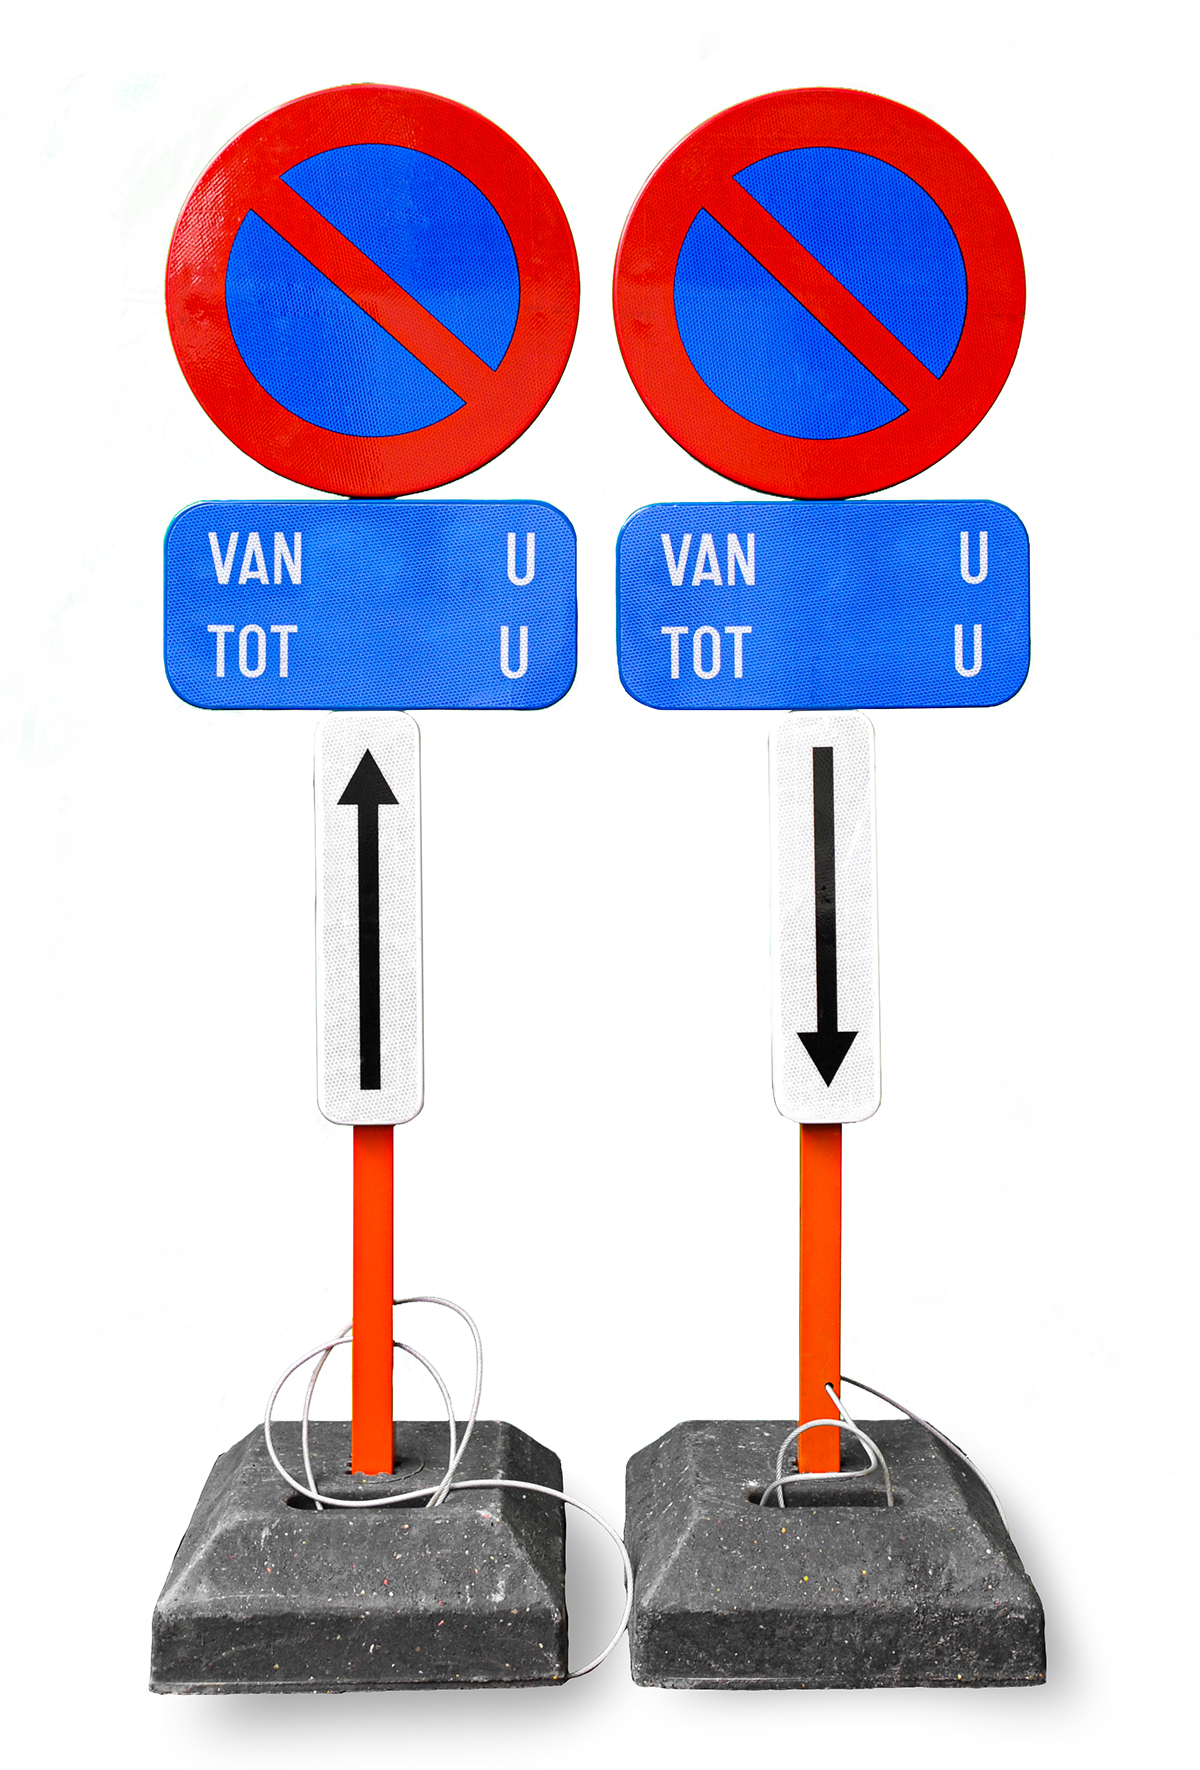 SET E1 parkeren - Aanbod - Officiële webshop Parkeerborden Gent Verhuur en verkoop van parkeerborden en signalisatie